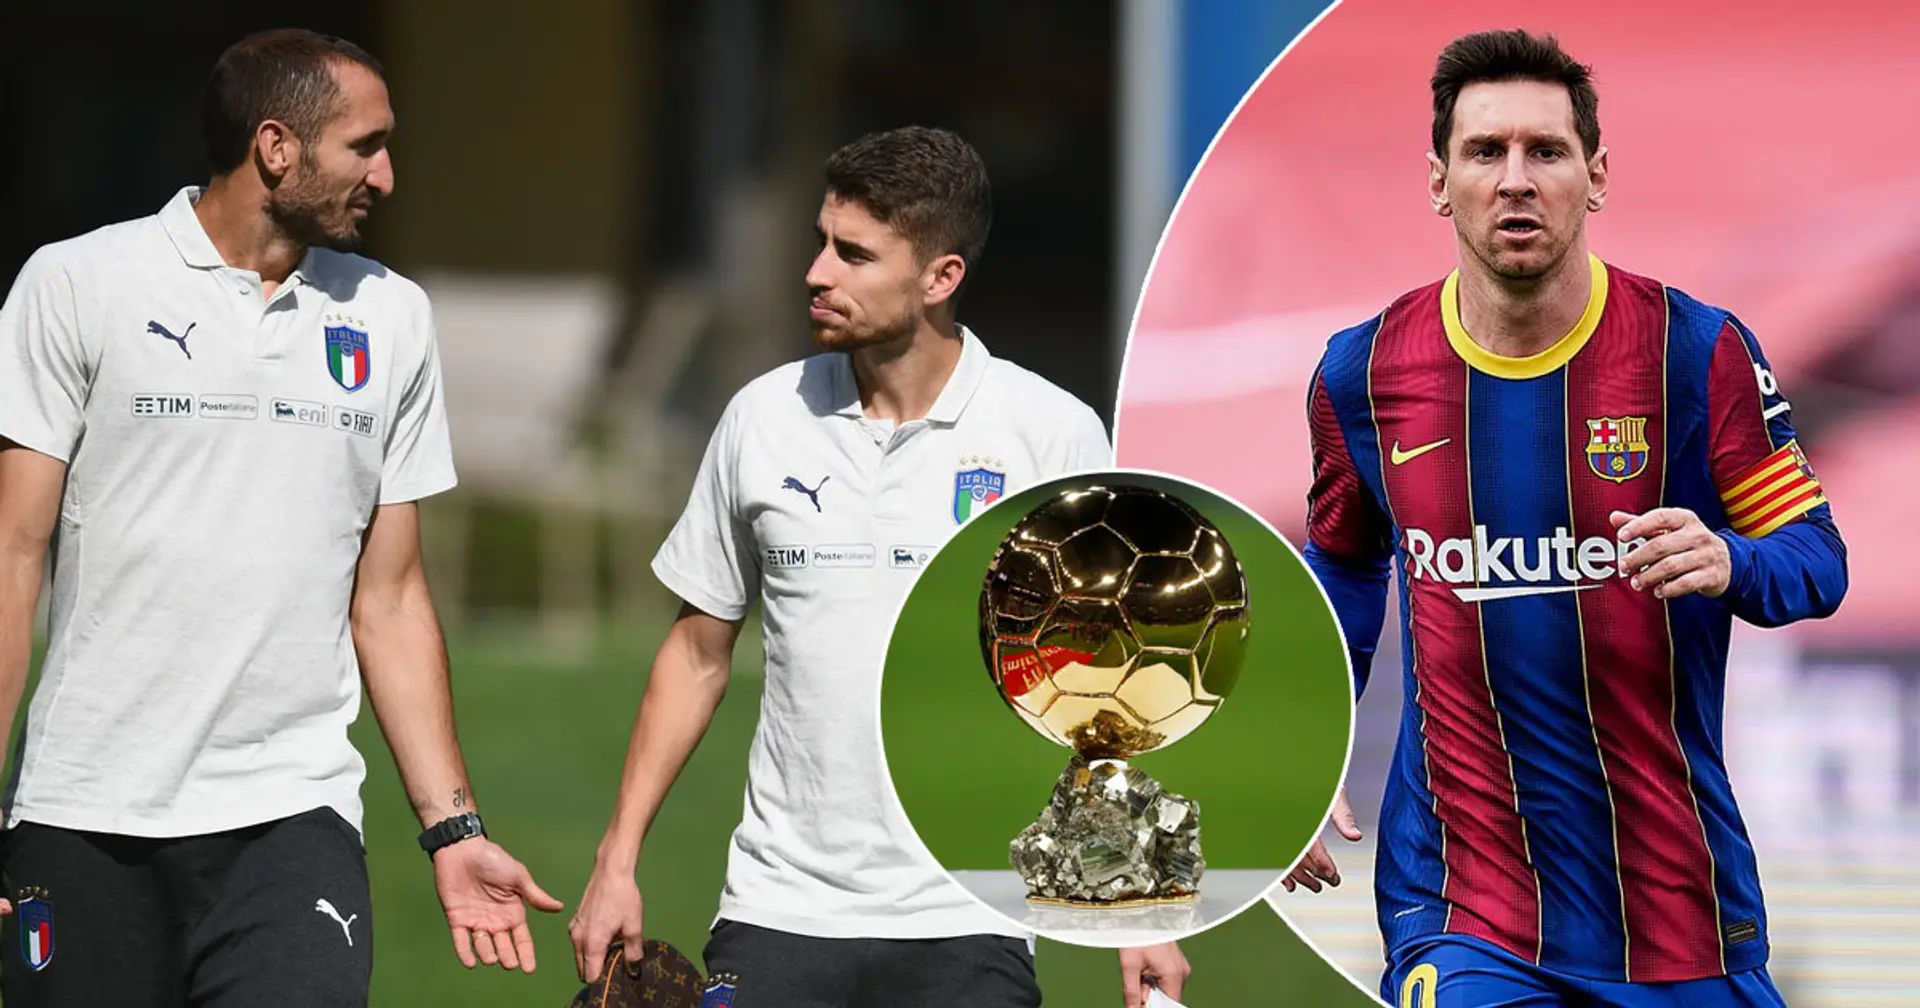 L'entraîneur du Shakhtar De Zerbi nomme un candidat surprenant pour remporter le Ballon d'Or devant Messi